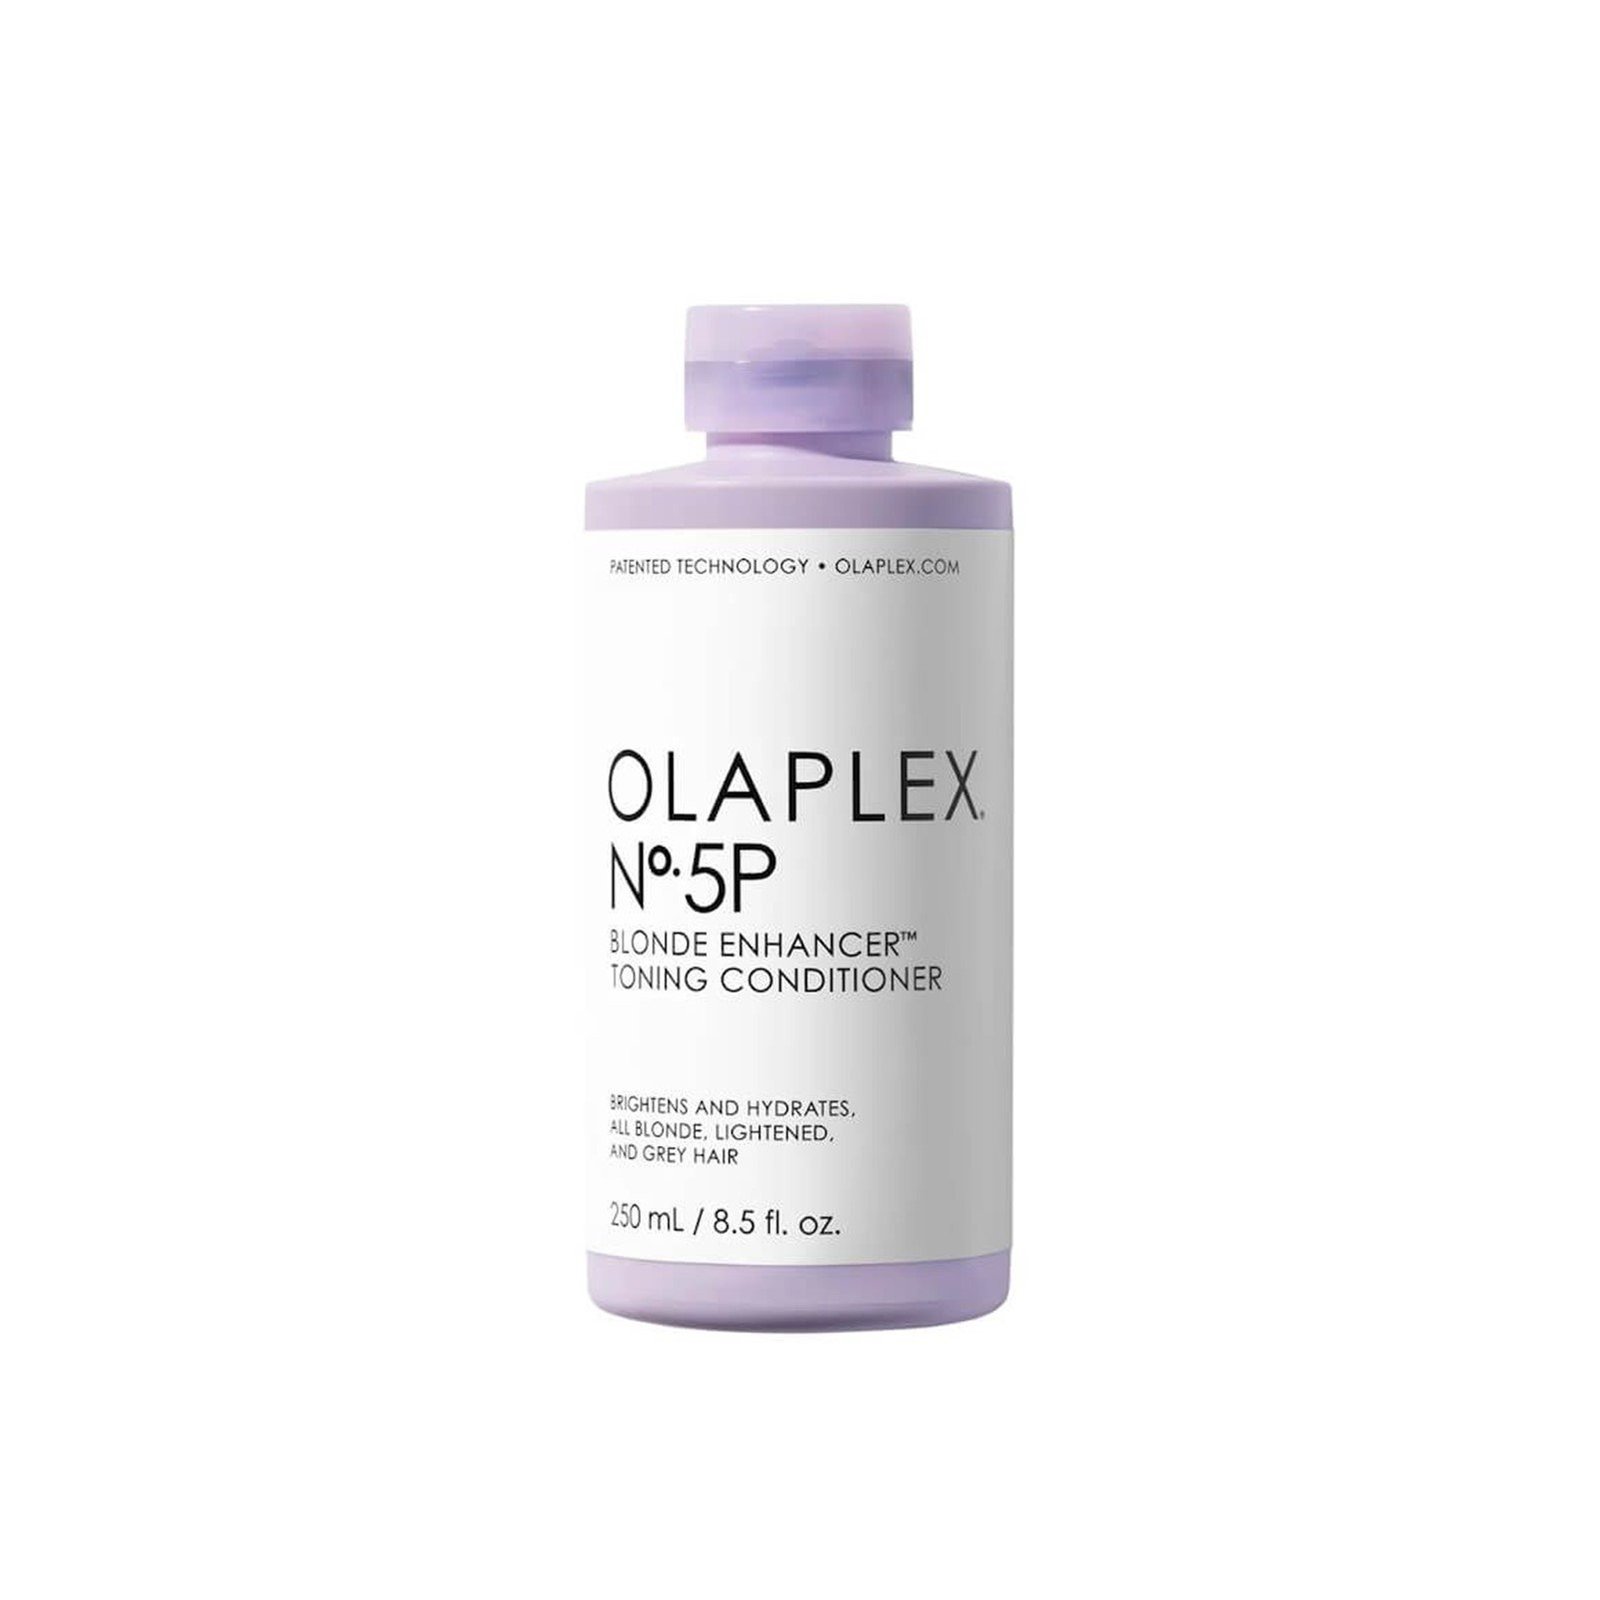 OLAPLEX Nº5P Blonde Enhancer Toning Conditioner 250ml